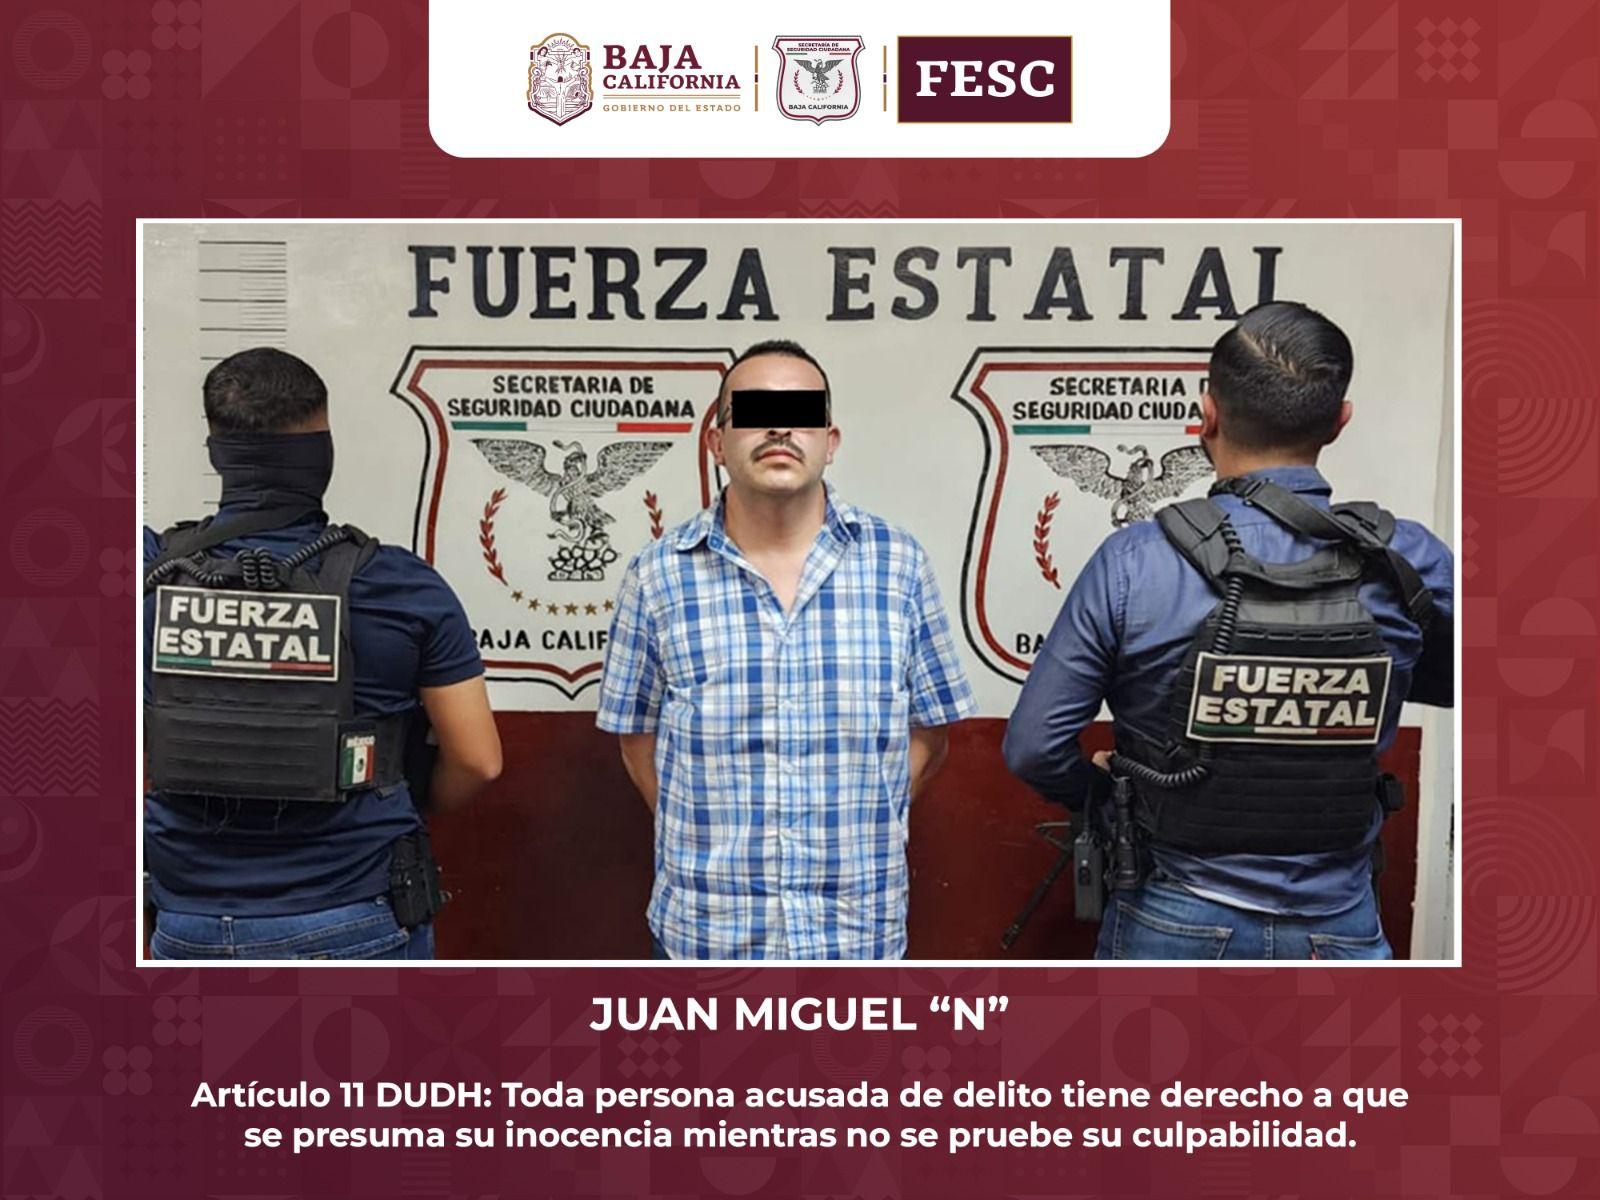 Hombre buscado por tráfico de drogas en Estados Unidos, es detenido en Mexicali por la fuerza Estatal